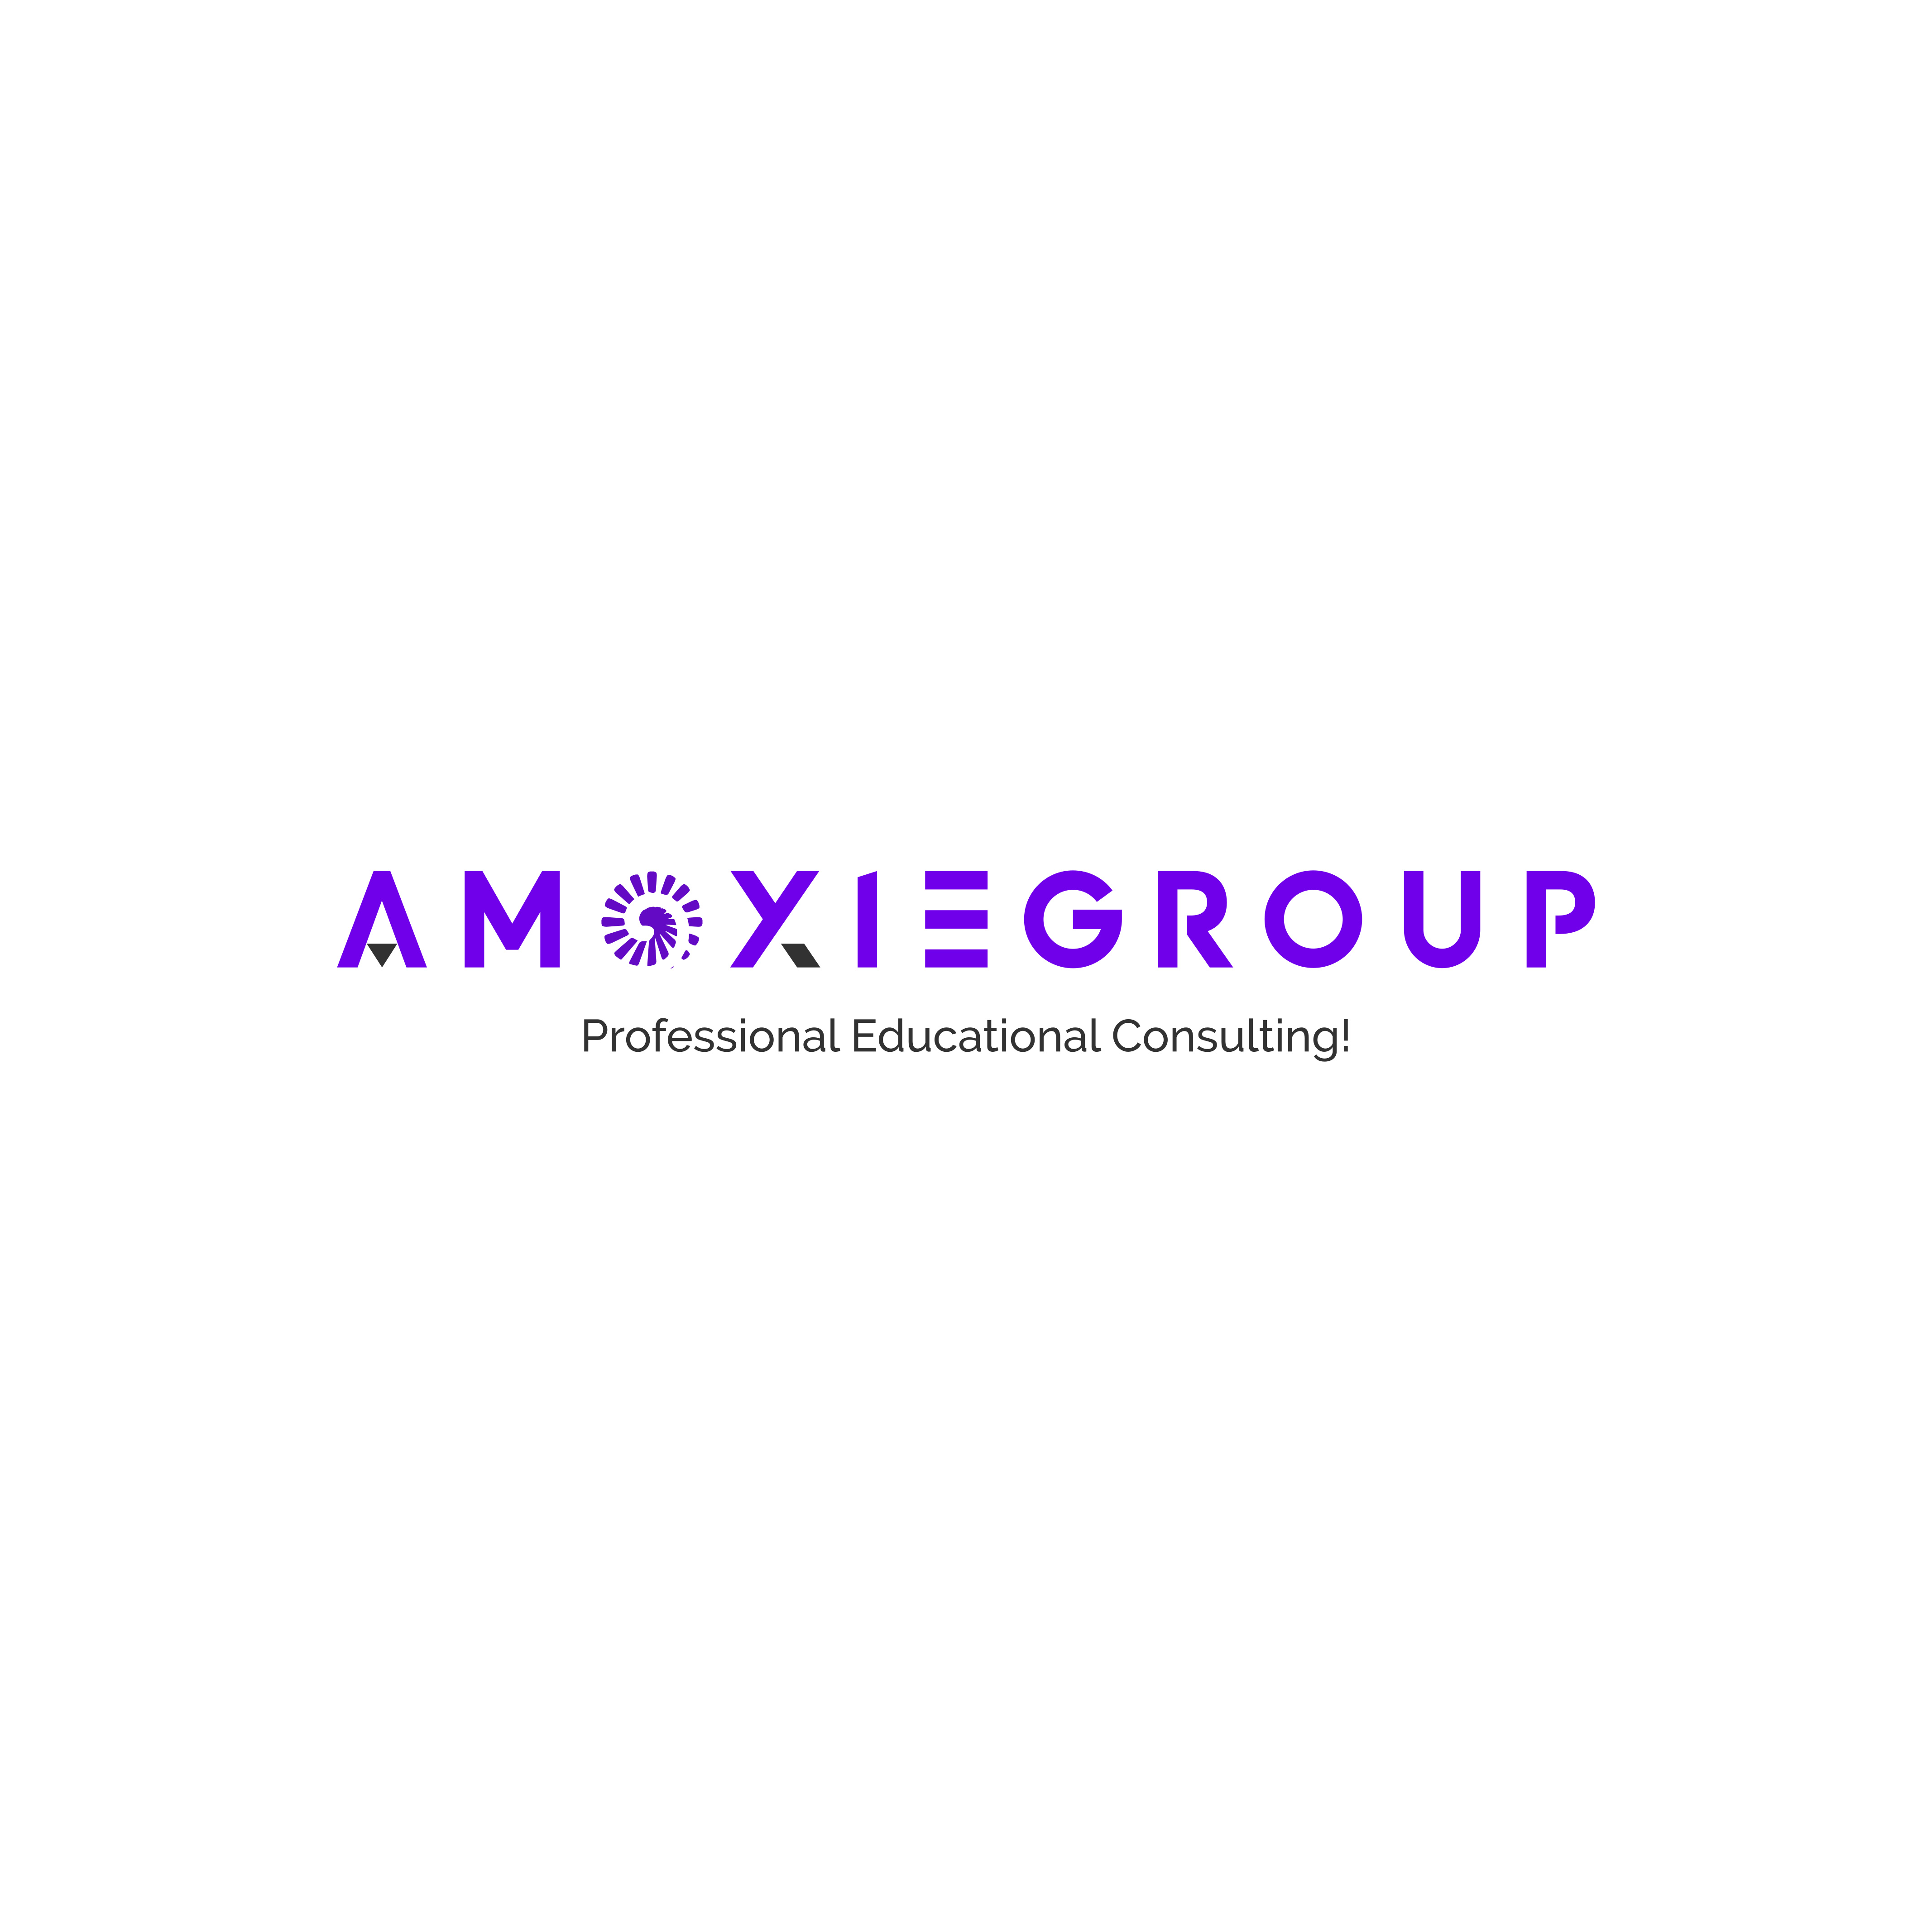 Amoxie Group